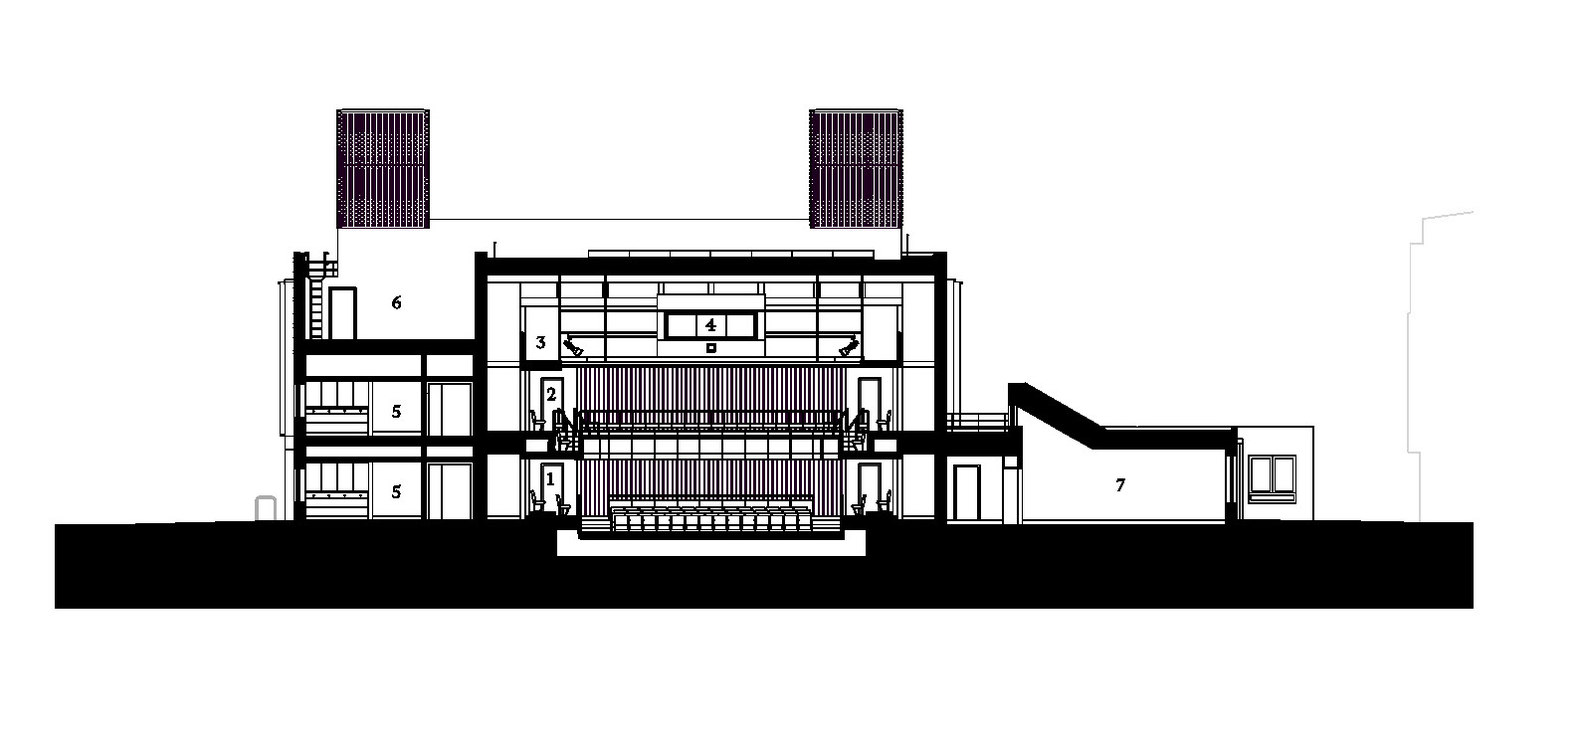 英国剑桥perse学院表演艺术中心建筑设计/Haworth Tompkins